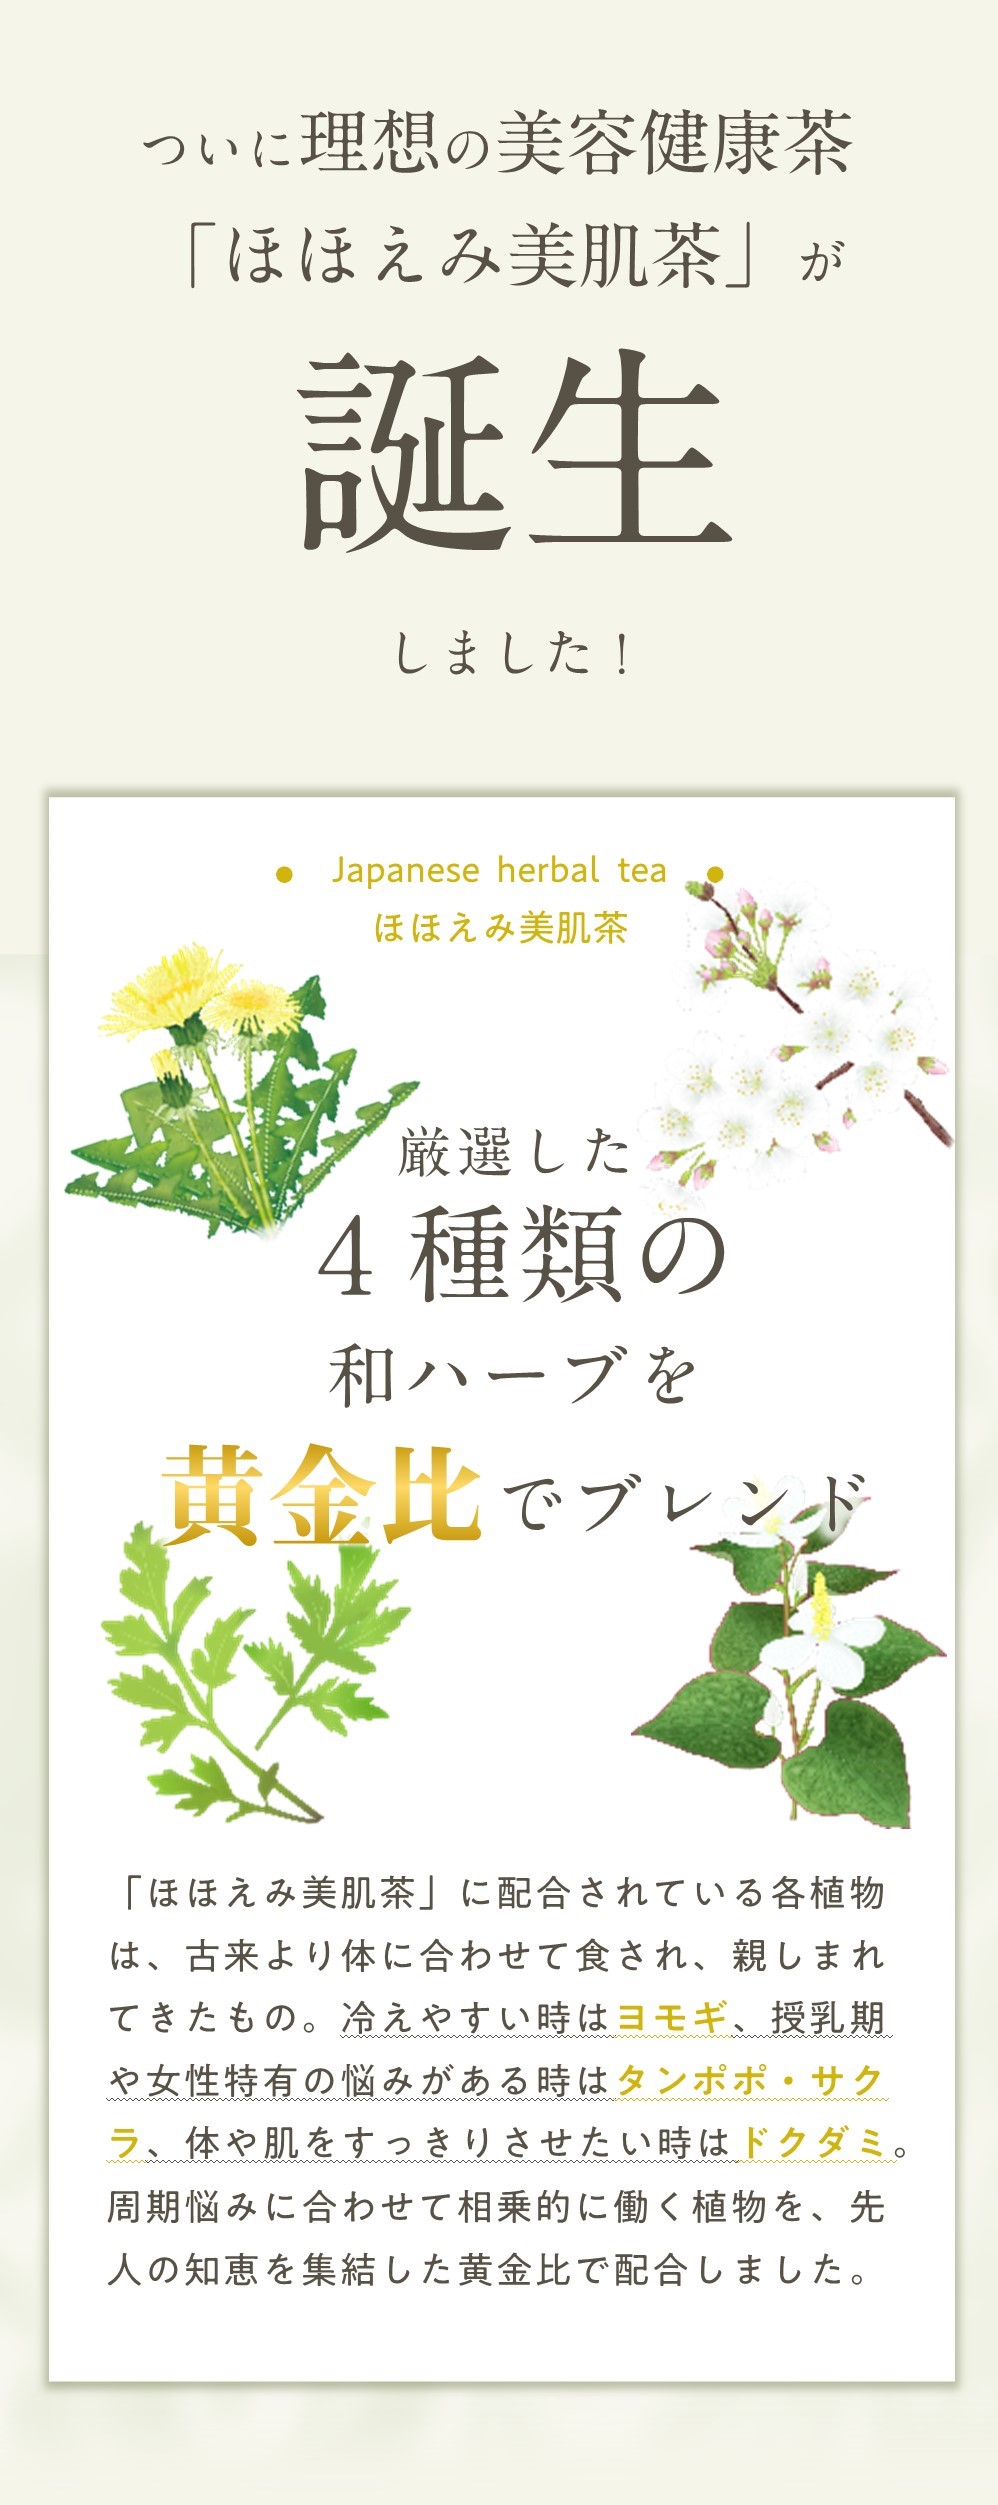 美容健康茶「ほほえみ美肌茶」は黄金比でブレンド。国産ヨモギ・タンポポ・ドクダミ・サクラの4種類の和ハーブで製造